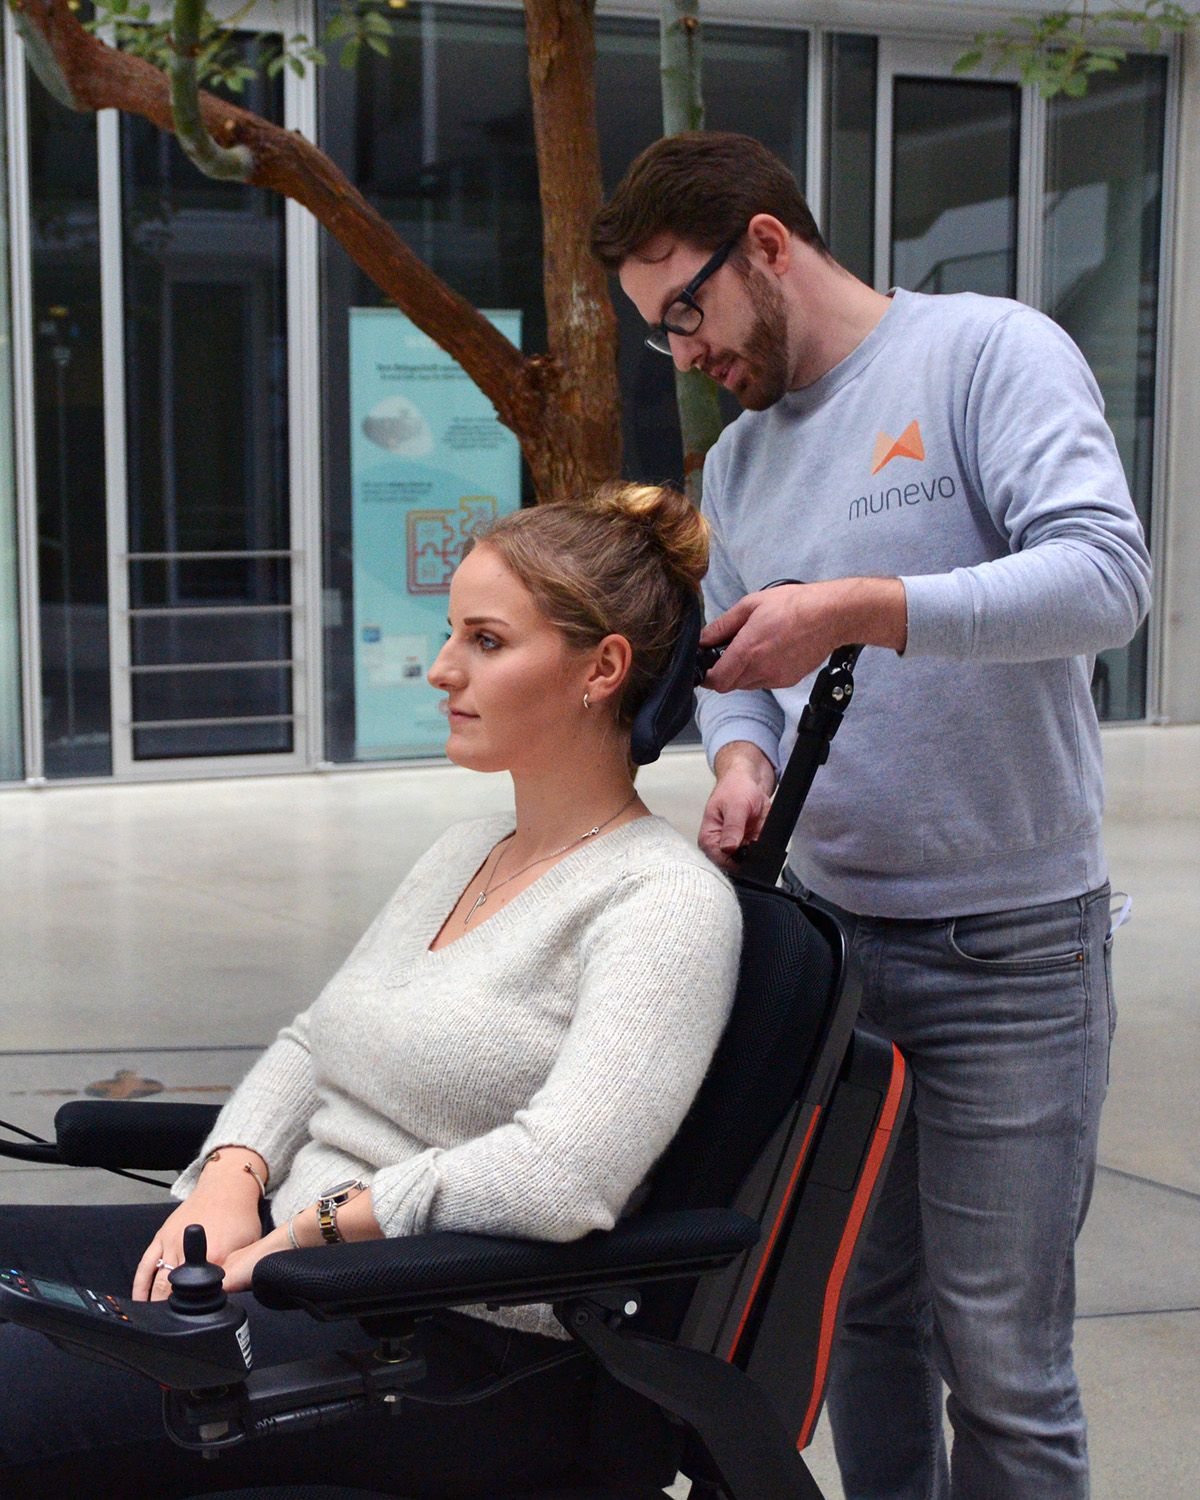 munevo-Mitarbeiter beim Einstellen der Kopfstütze des Rollstuhls einer munevo-Nutzerin